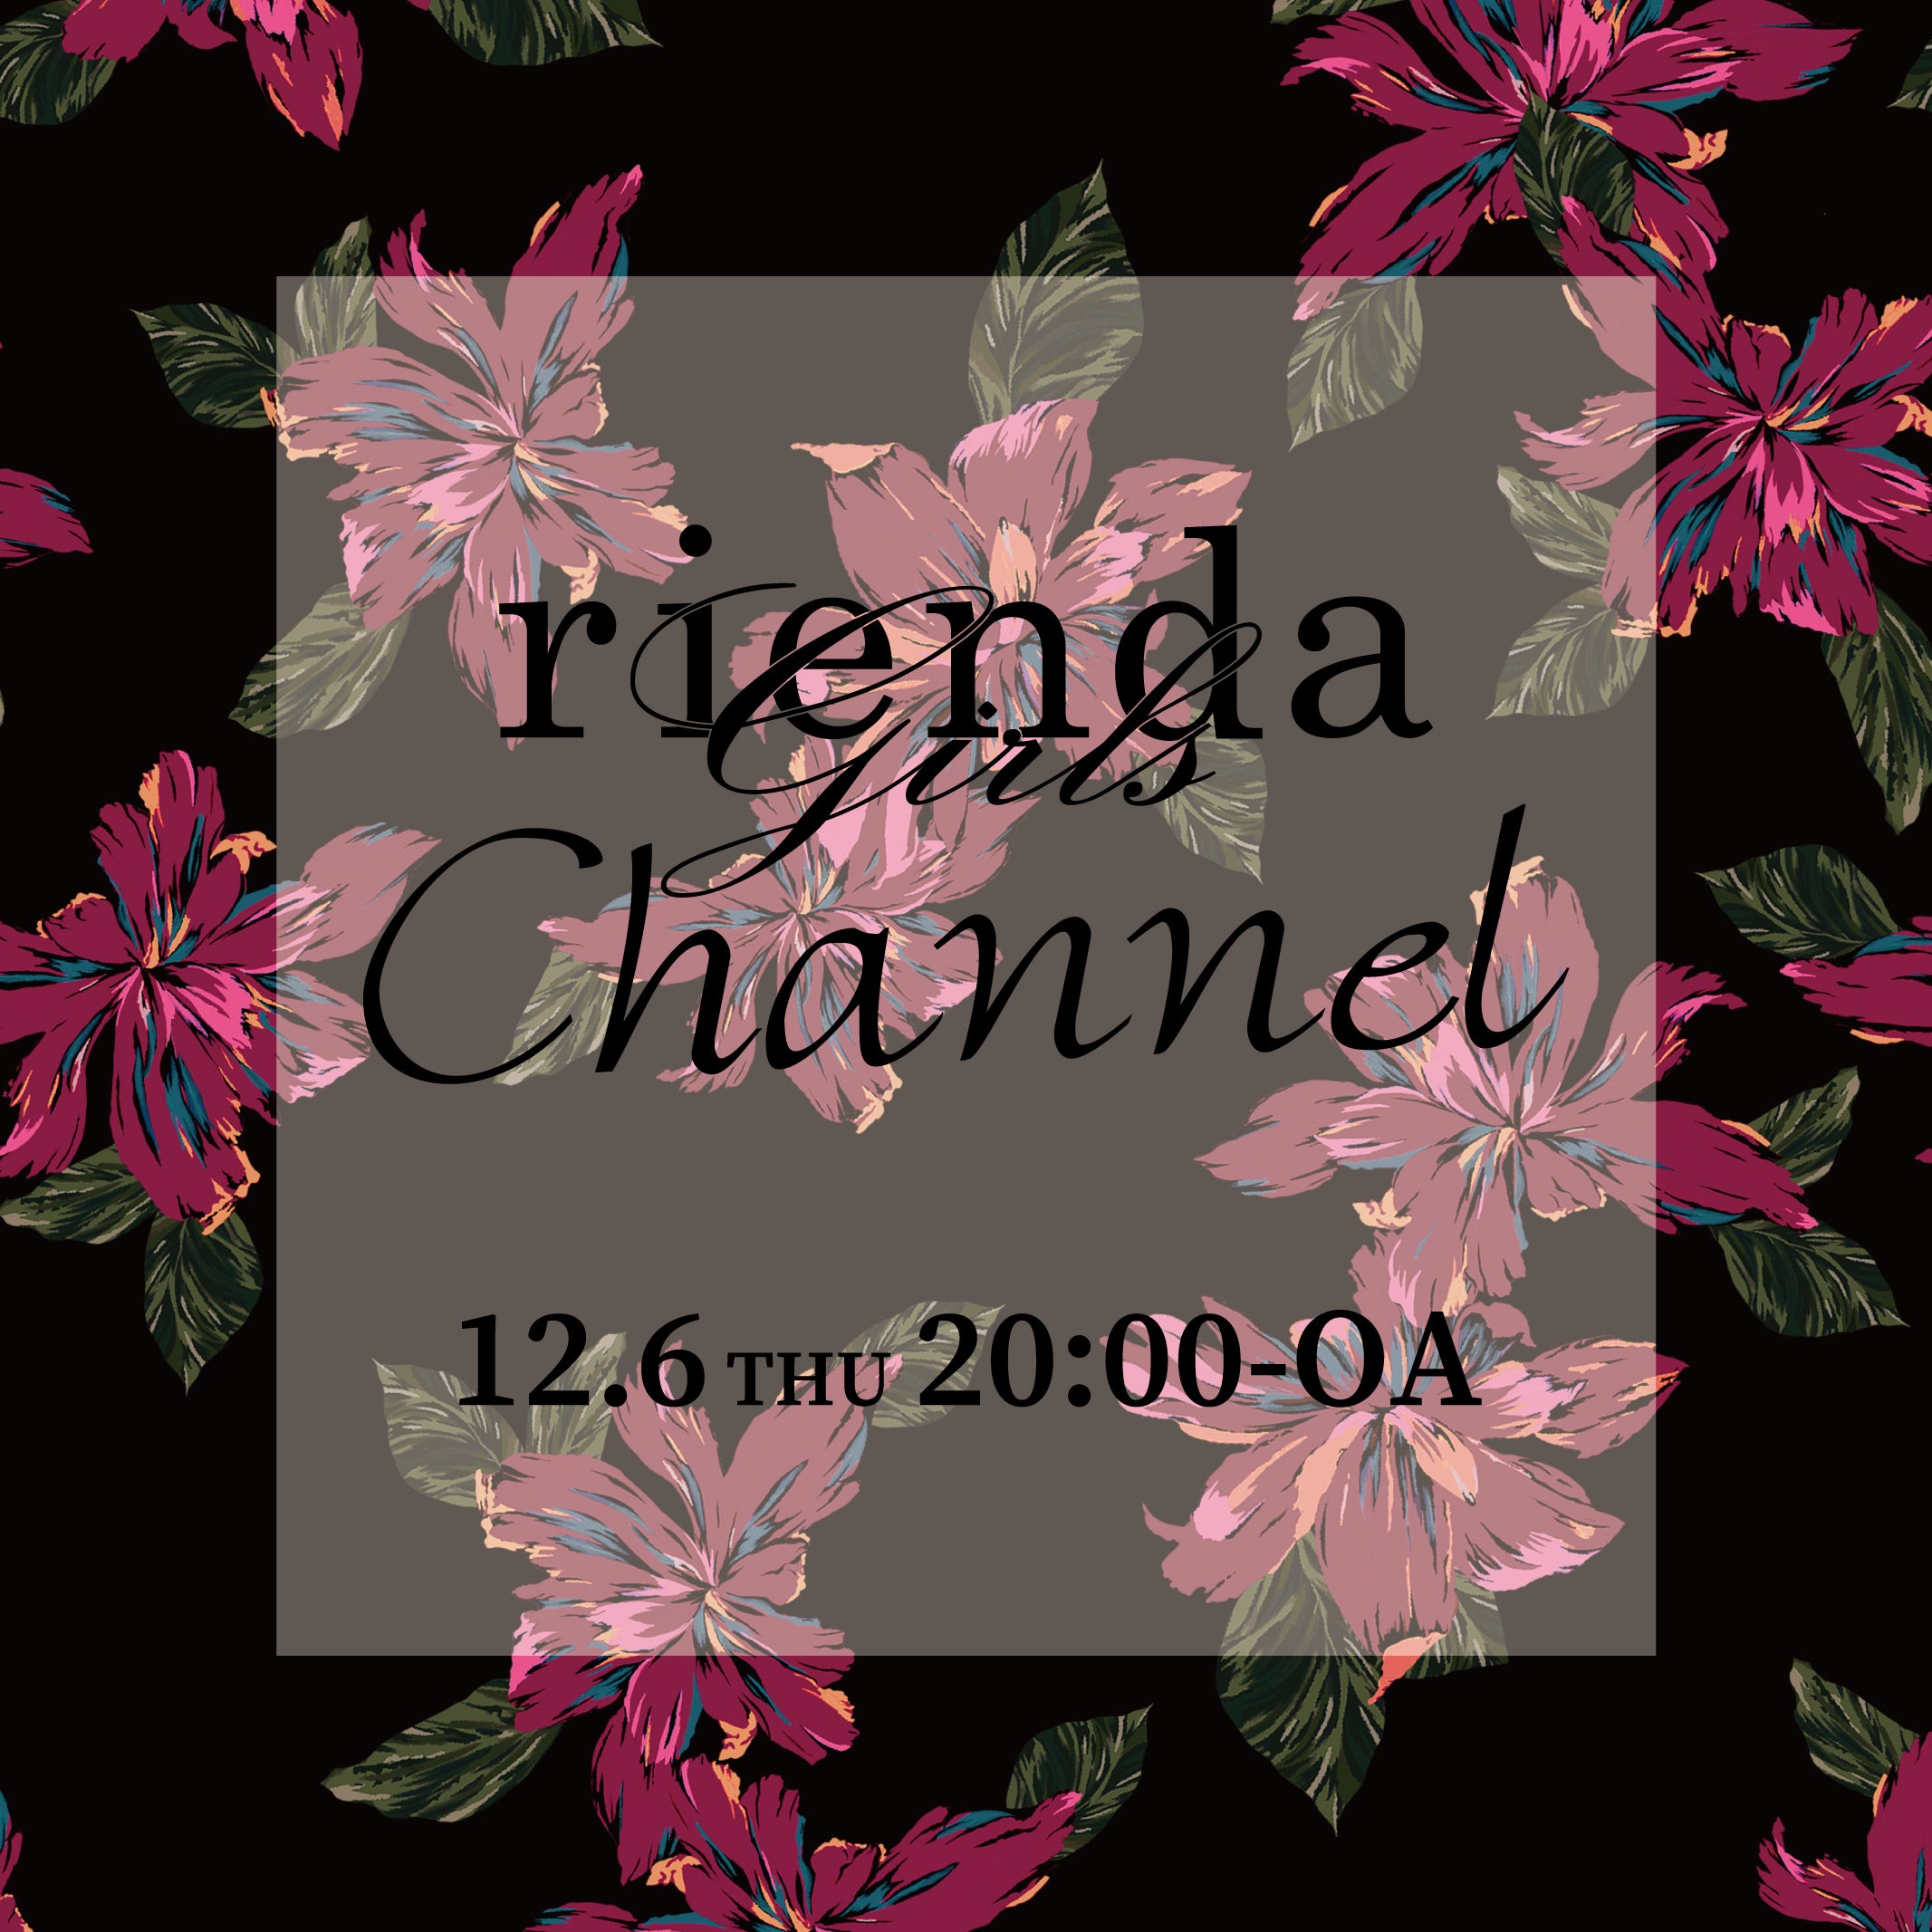 Rienda Girls Channel リエンダガールズチャンネル 配信情報 Rienda Styleオフィシャルブログ Rienda Style Powered By Ameba